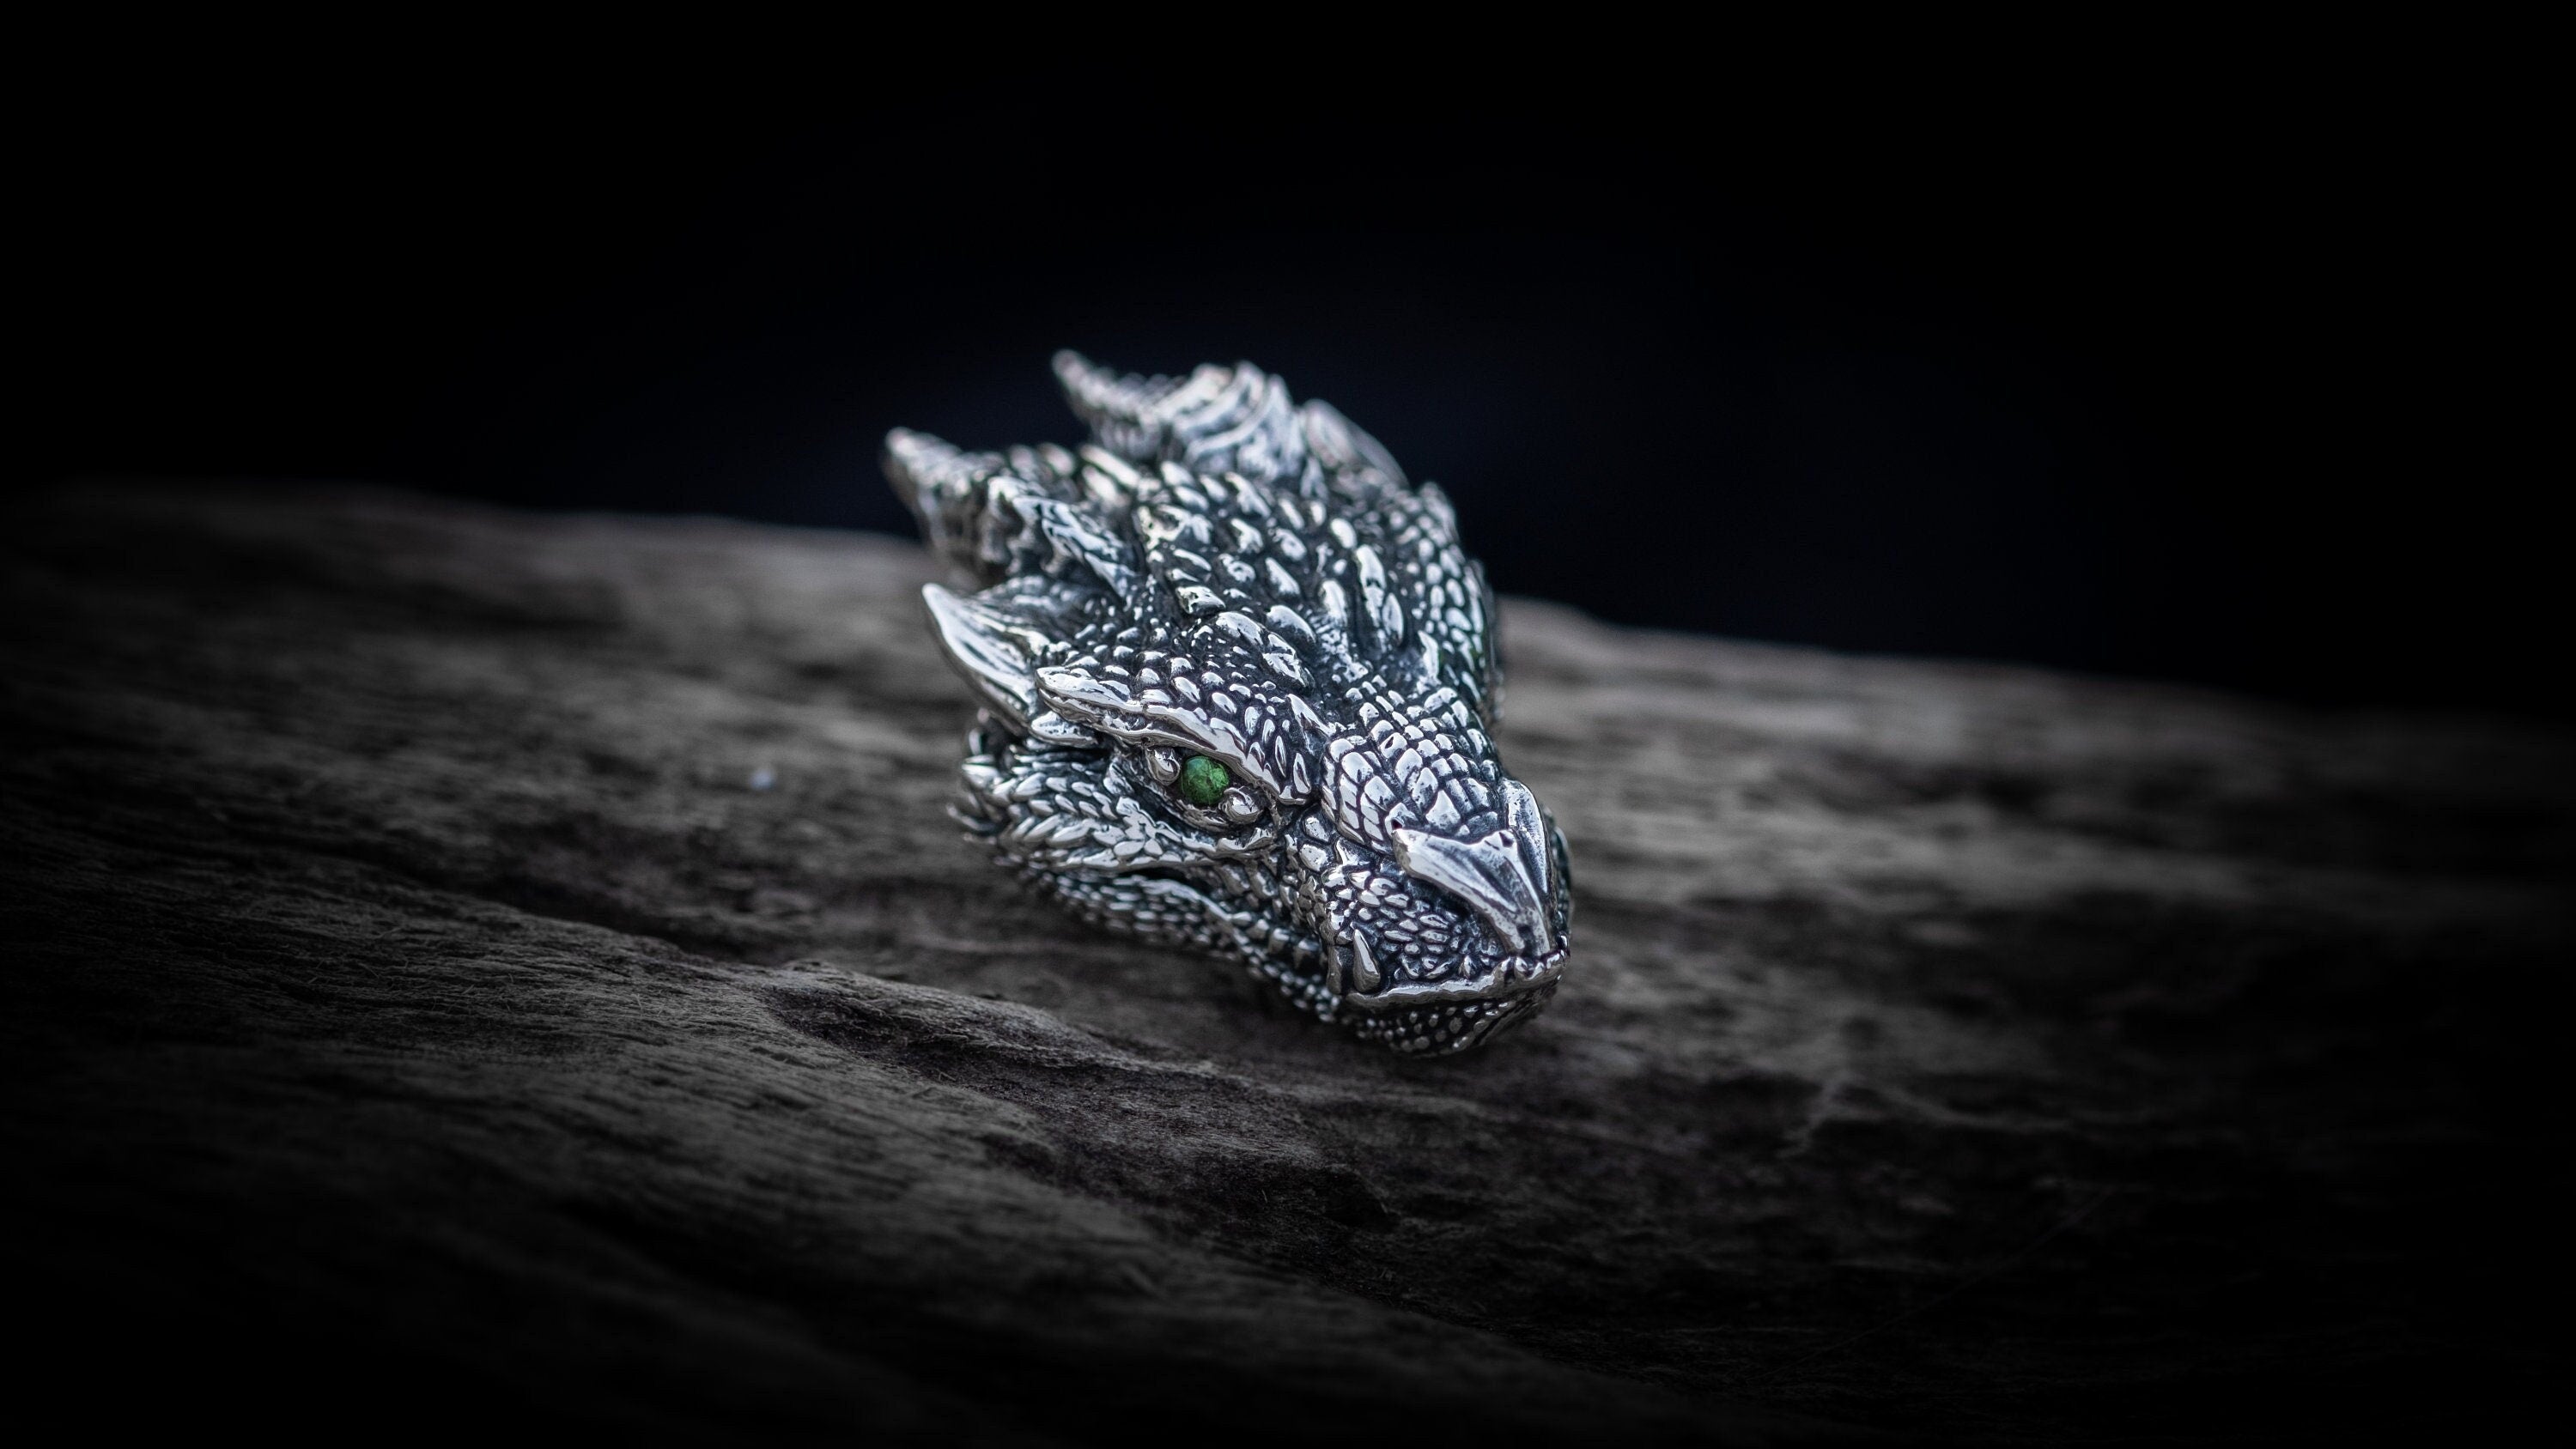 Silver Dragon Head Pendant